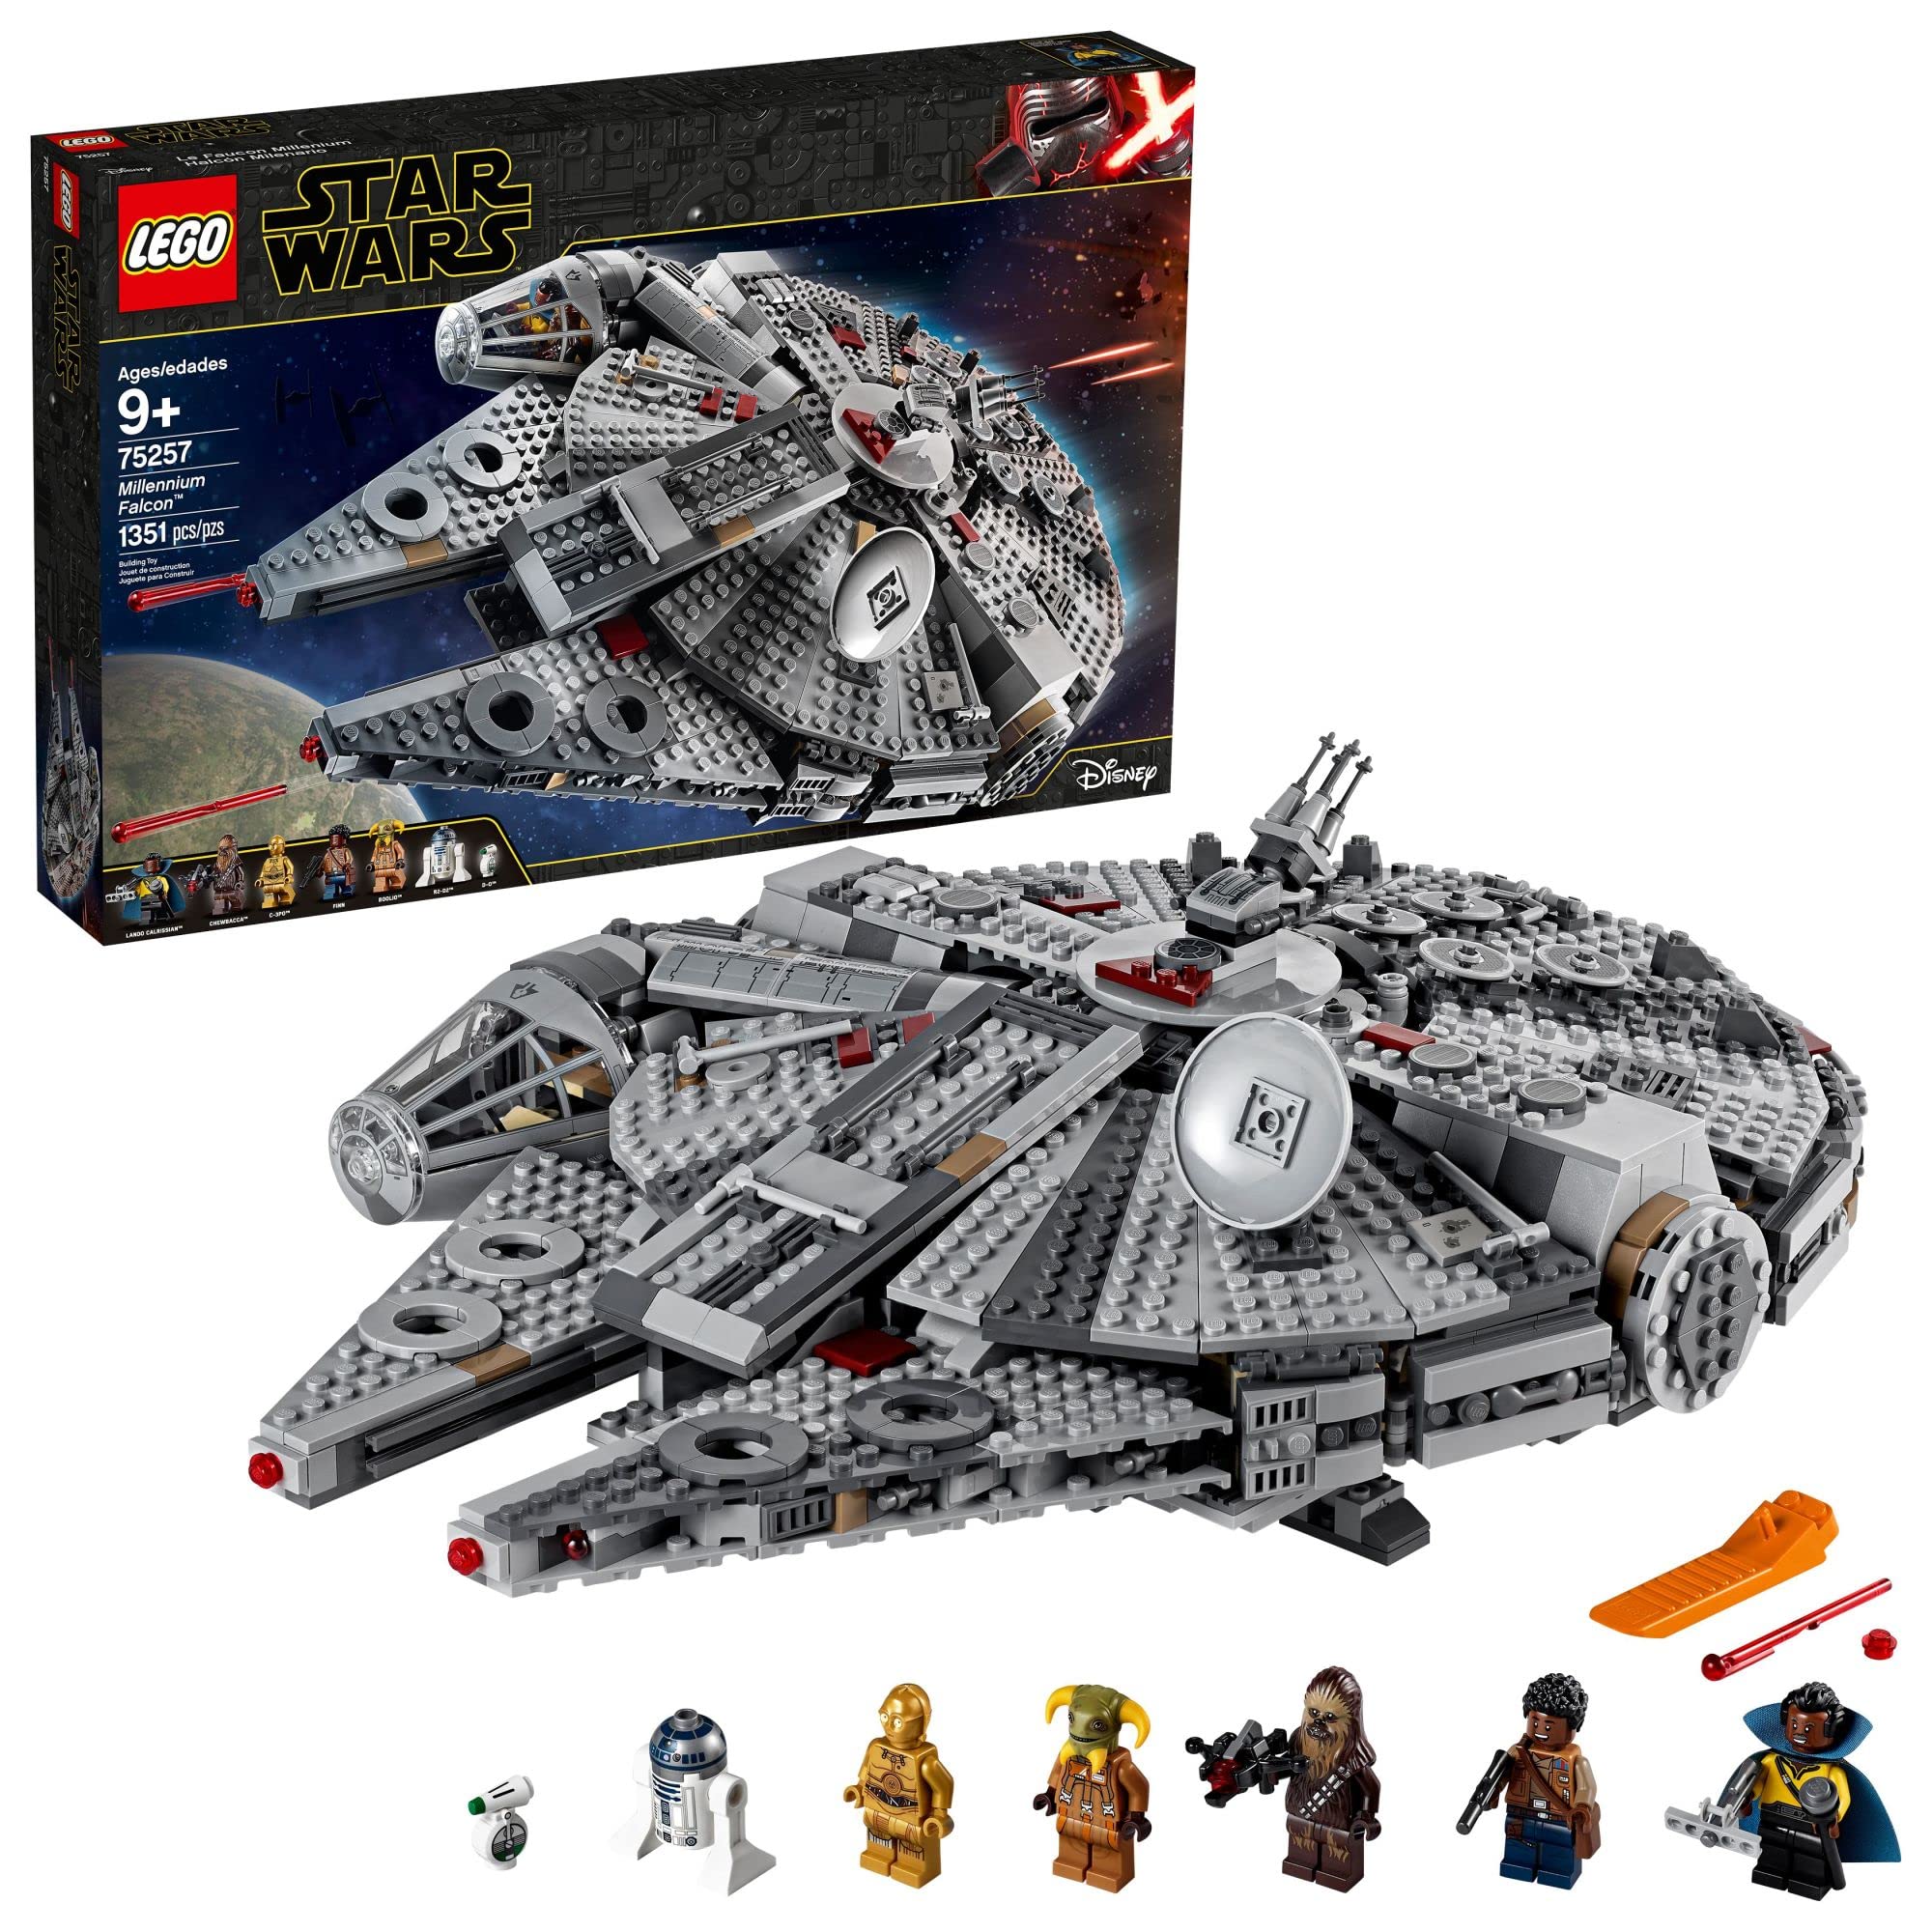 LEGO Star Wars: The Rise of Skywalker Millennium Falcon 75257 Zestaw do budowania modelu statku kosmicznego i minifigurki (1351 sztuk)